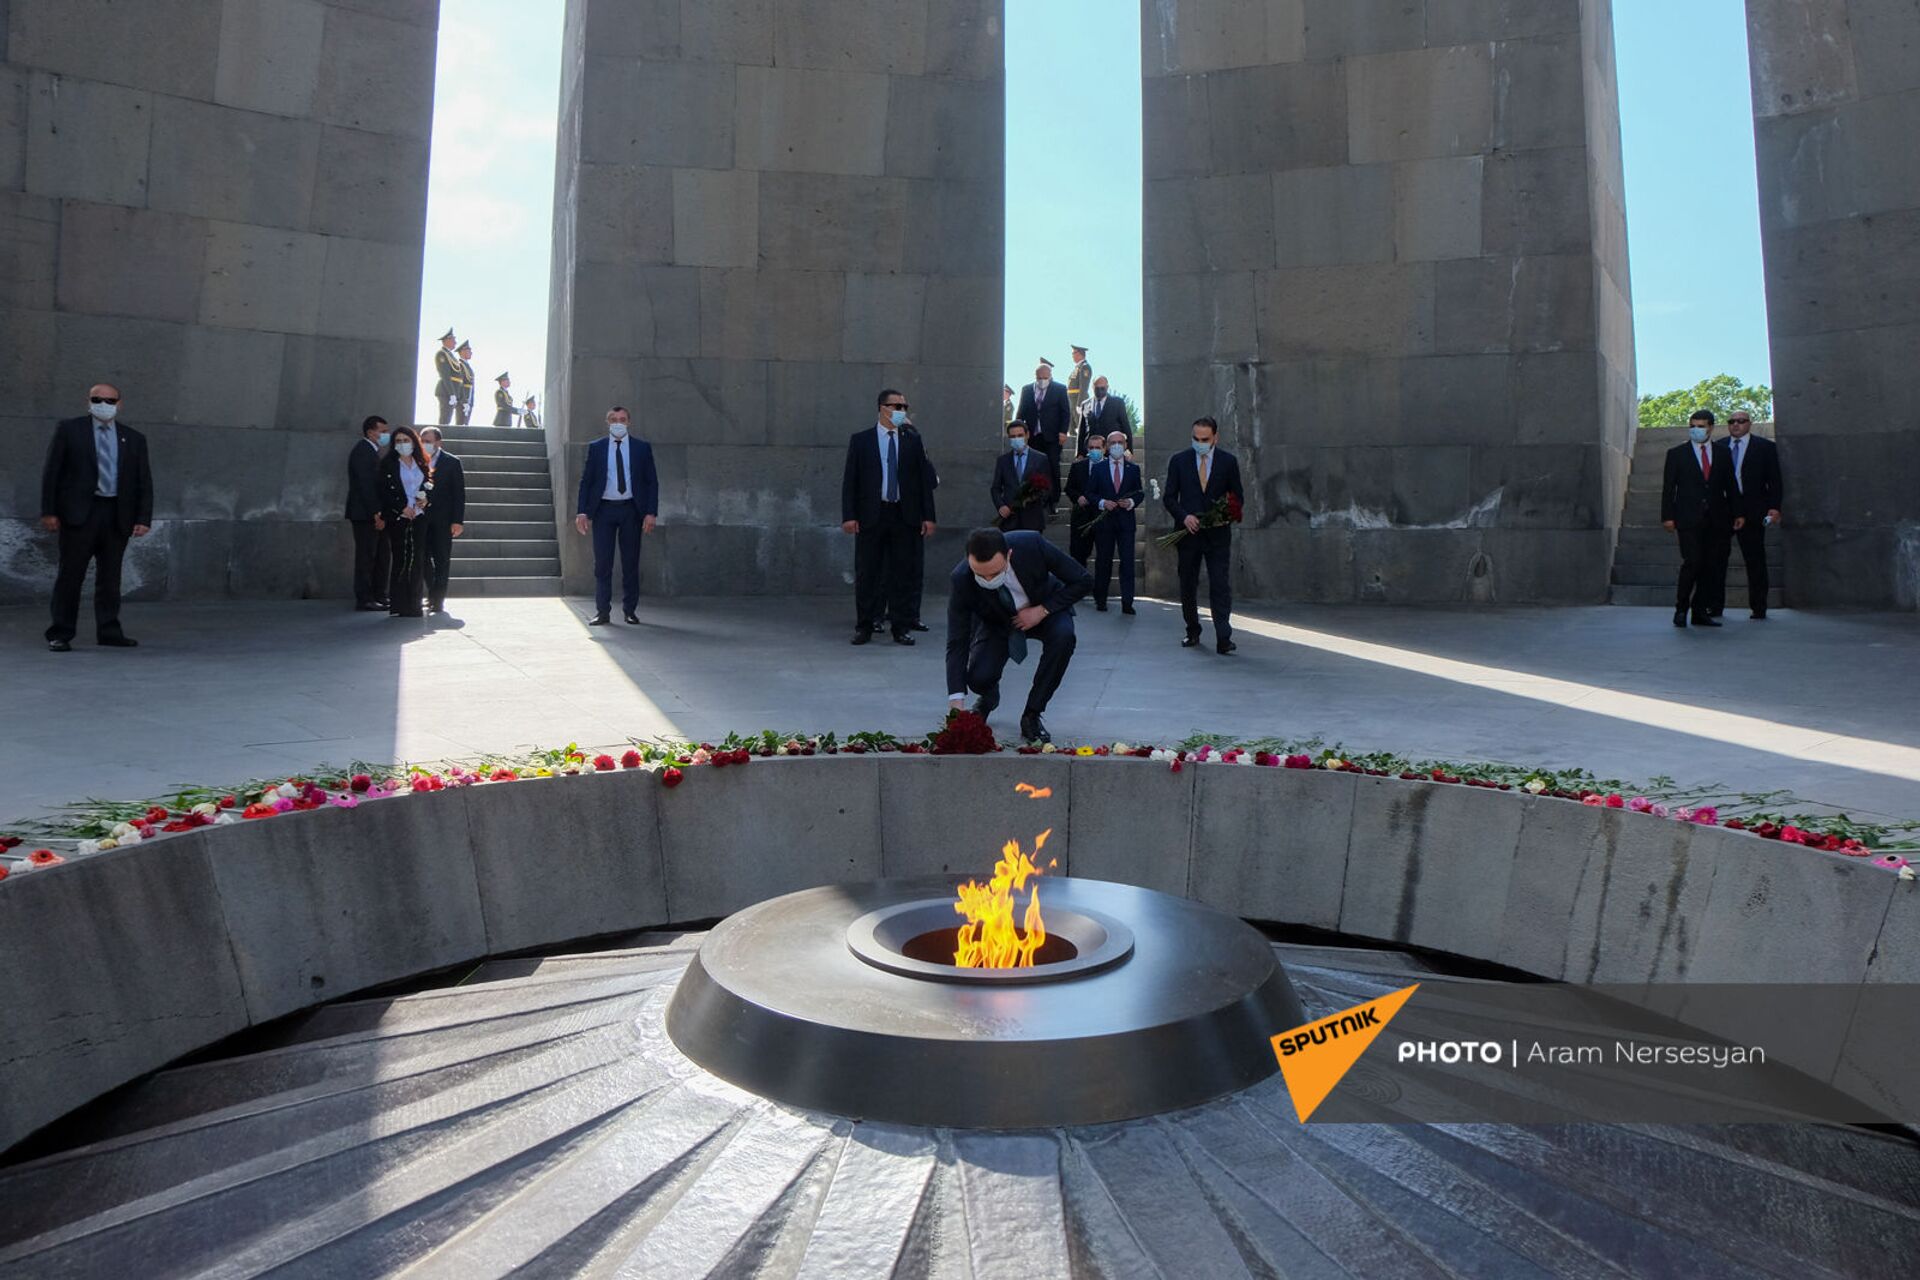 Վրաստանի վարչապետն այցելեց Ծիծեռնակաբերդ. լուսանկարներ - Sputnik Արմենիա, 1920, 12.05.2021